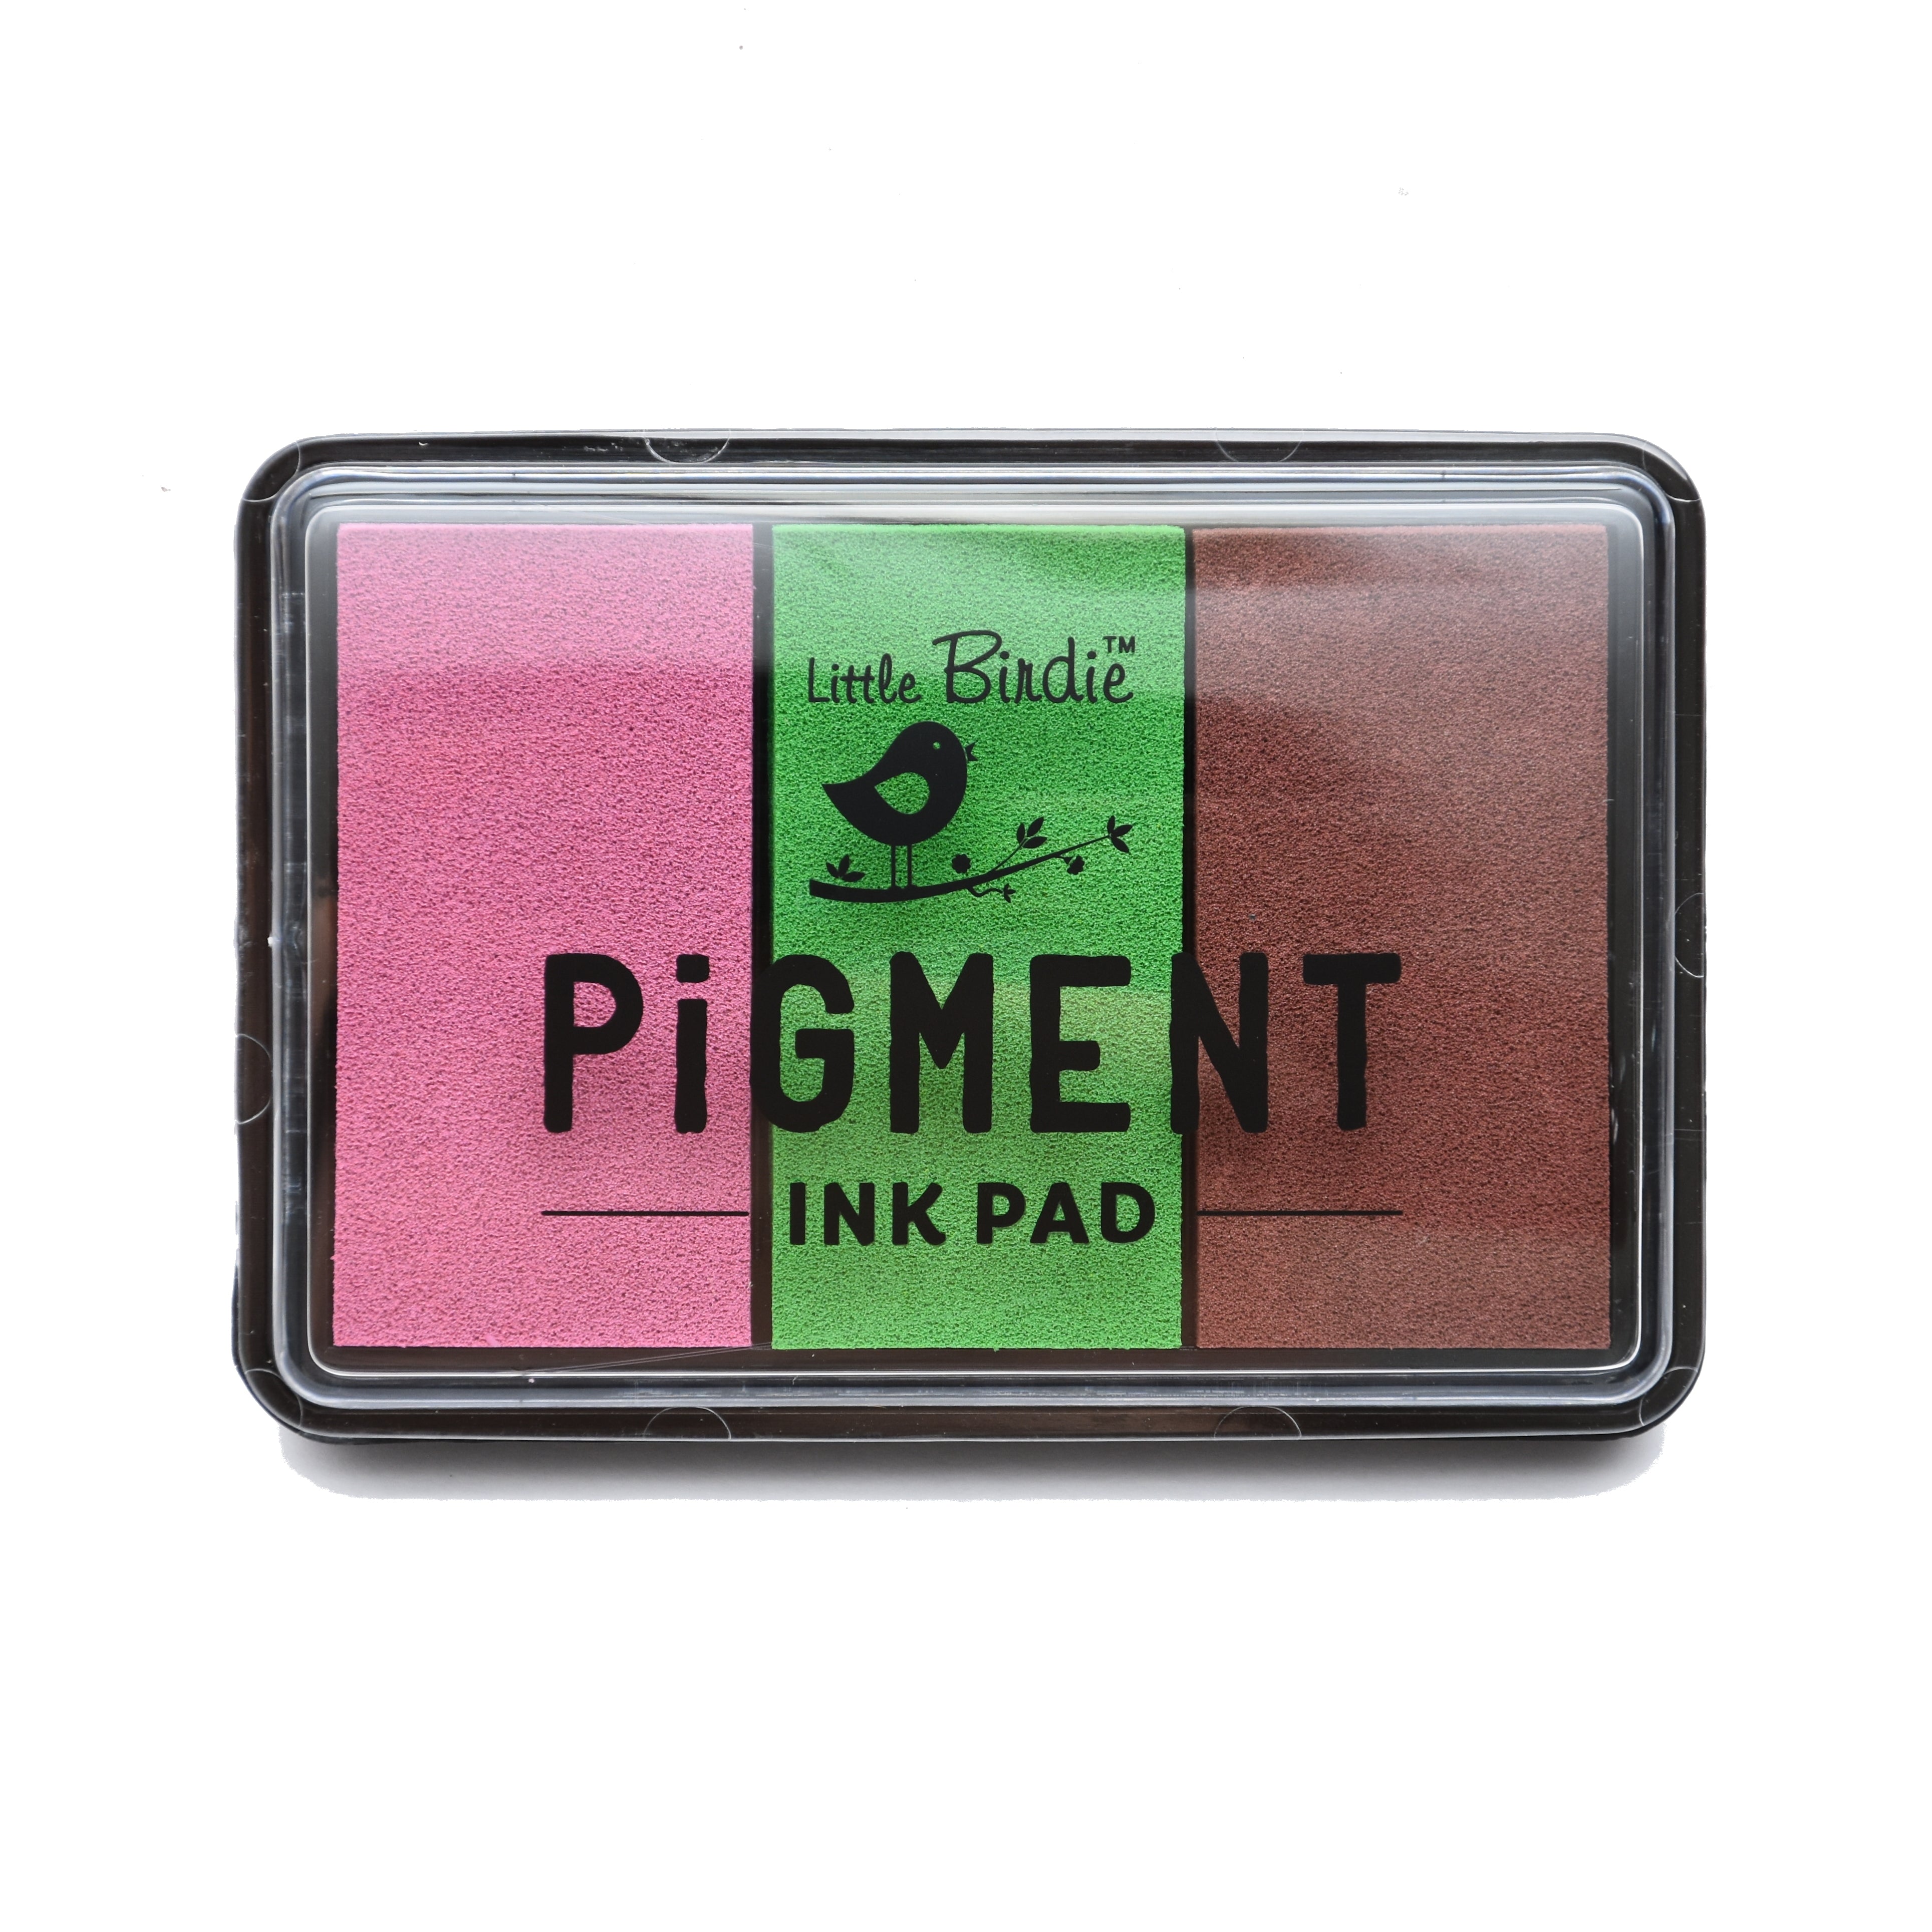 Pigment Ink Pad Kit Forest Flora P11.18.22 1Pc Lb